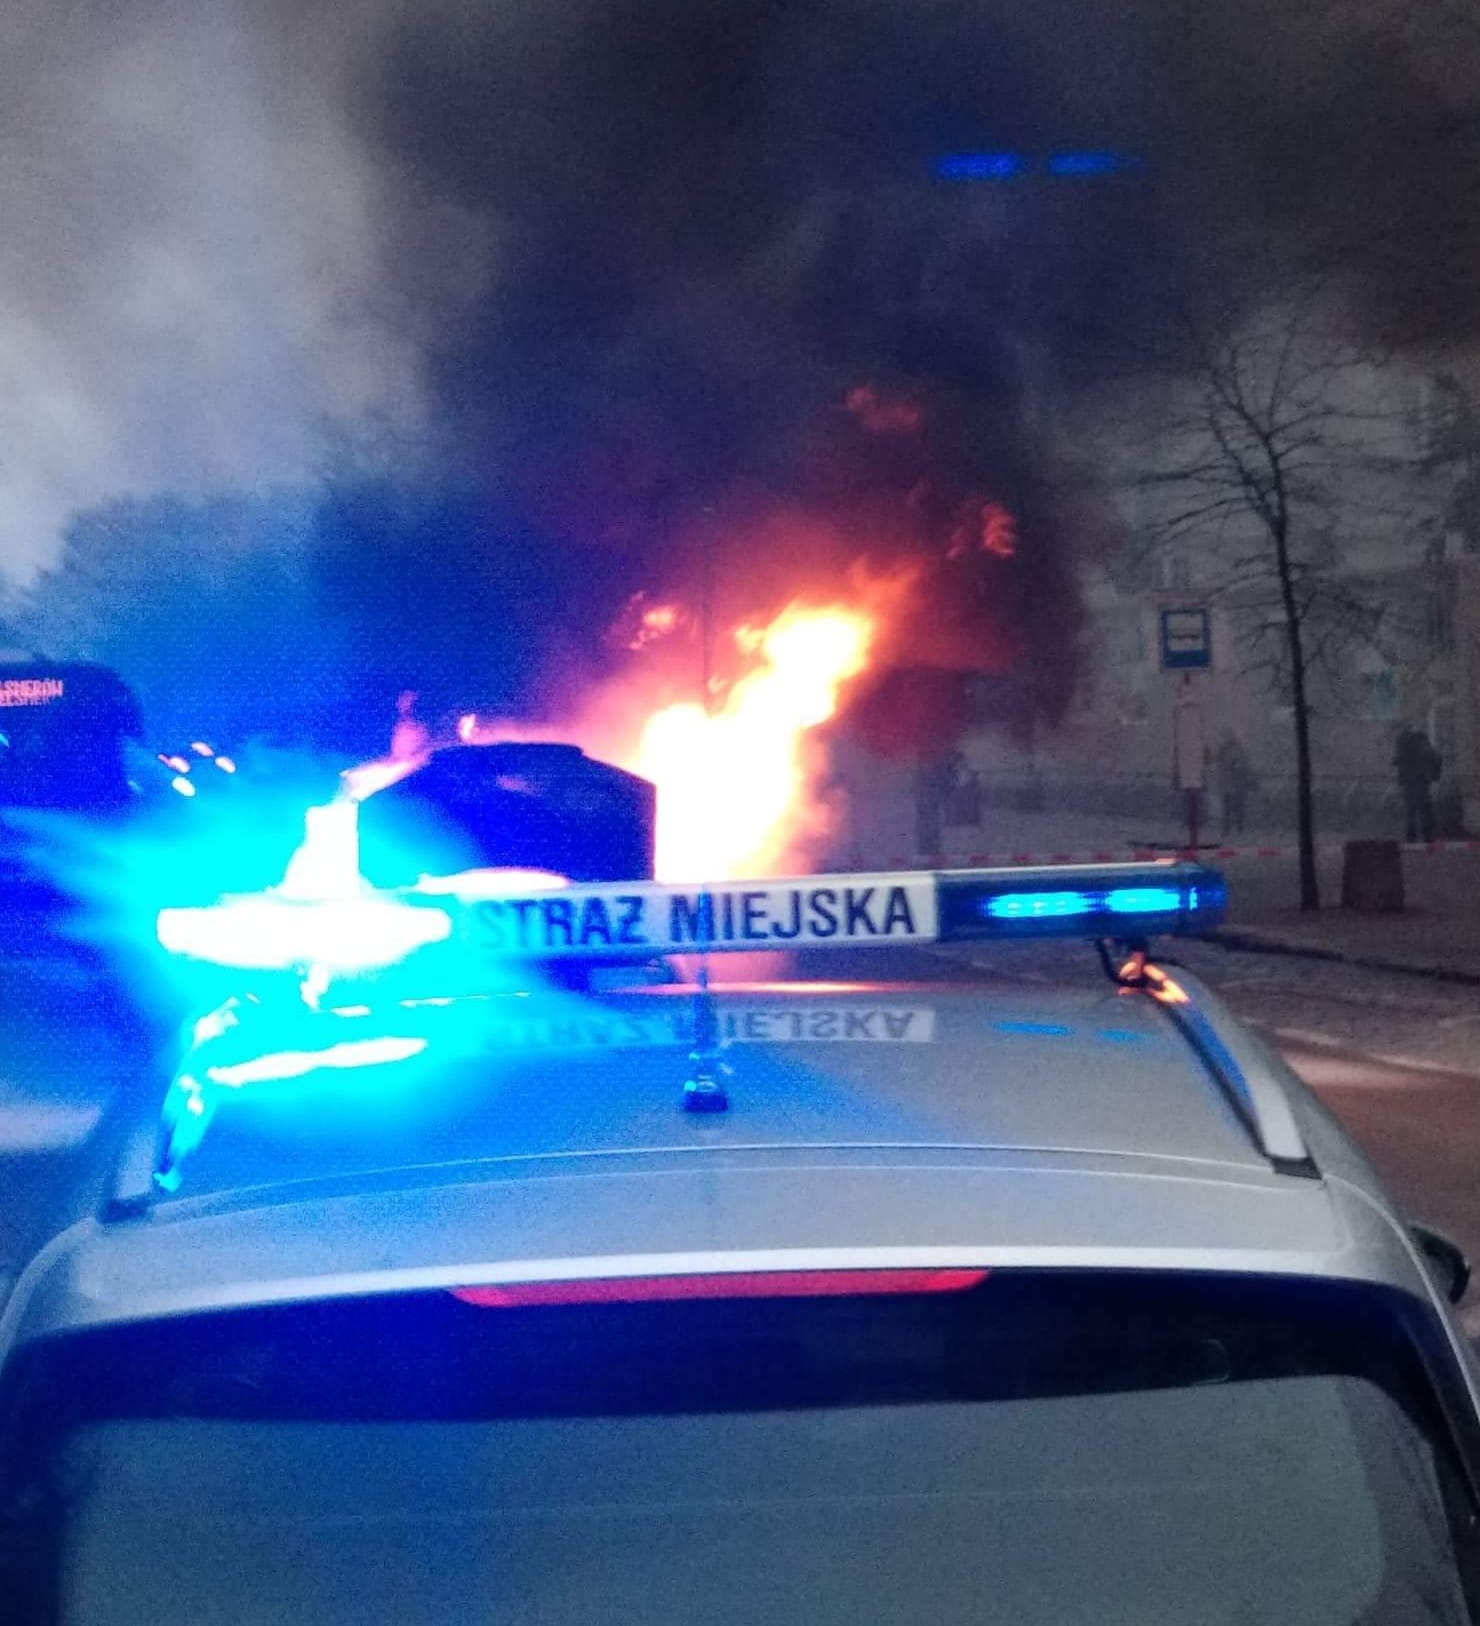 Radiowóz straży miejskiej z włączonymi sygnałami świetlnymi. W tle płonący samochód. Zdjęcie ilustracyjne.